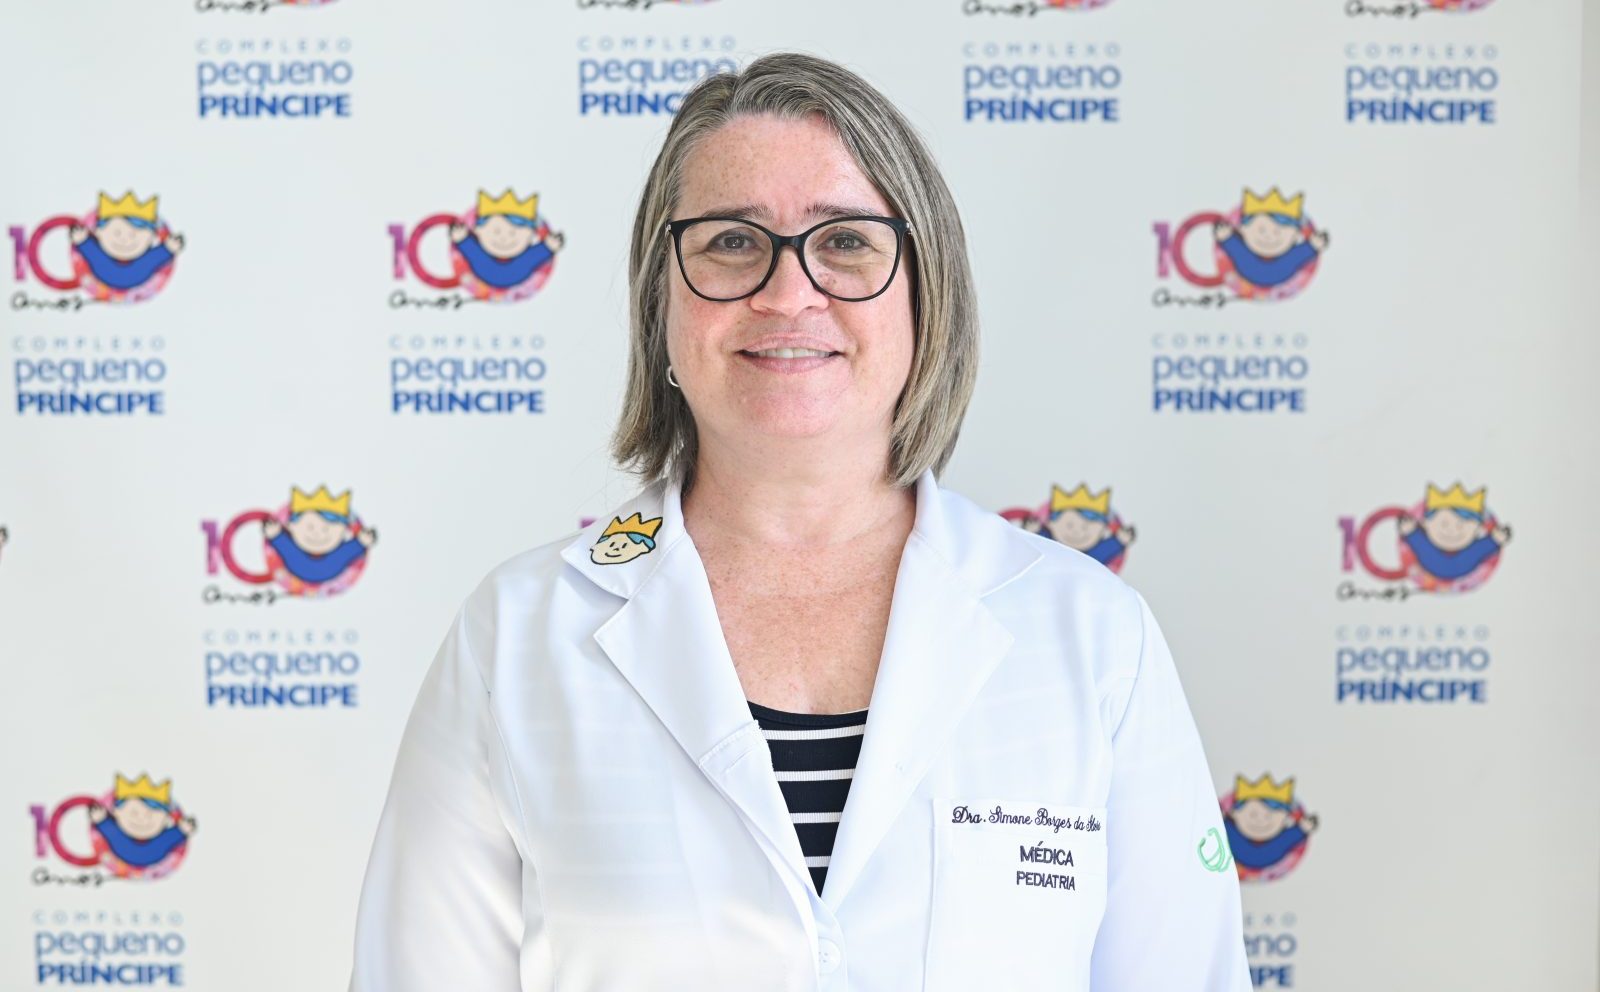 Dra. Simone Borges da Silveira